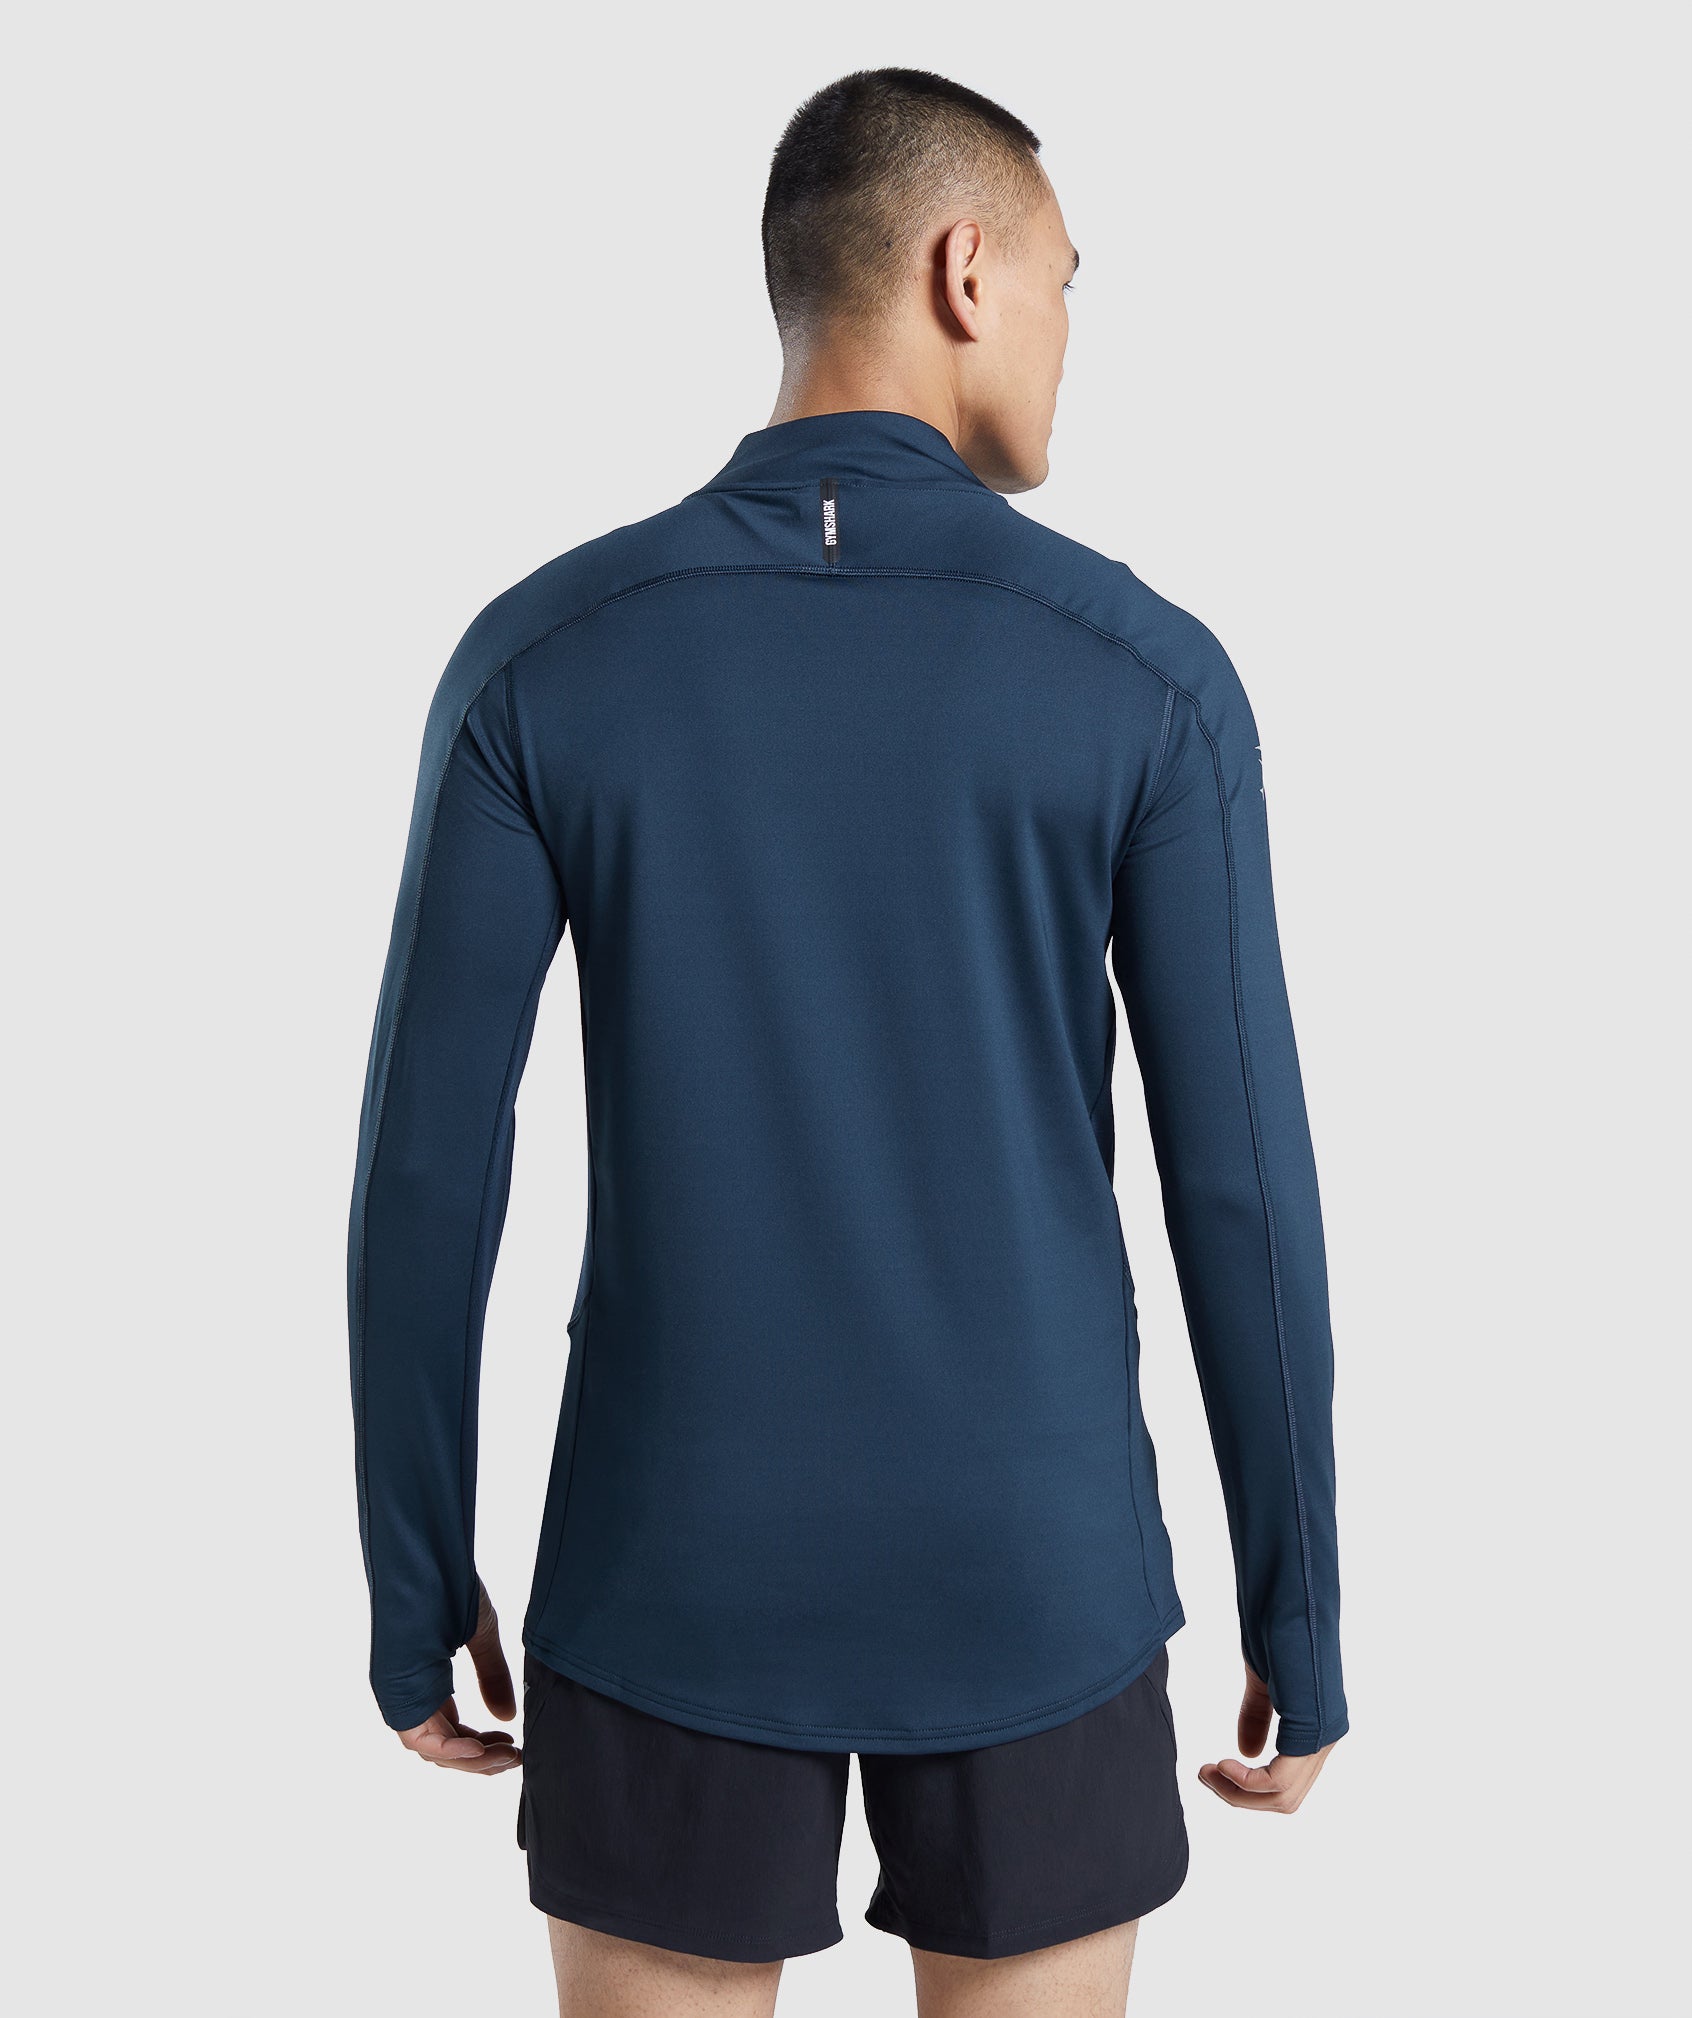 Gymshark Speed Evolve 1/4 Zip - Navy  Long sleeve tshirt men, 1/4 zip,  Gymshark